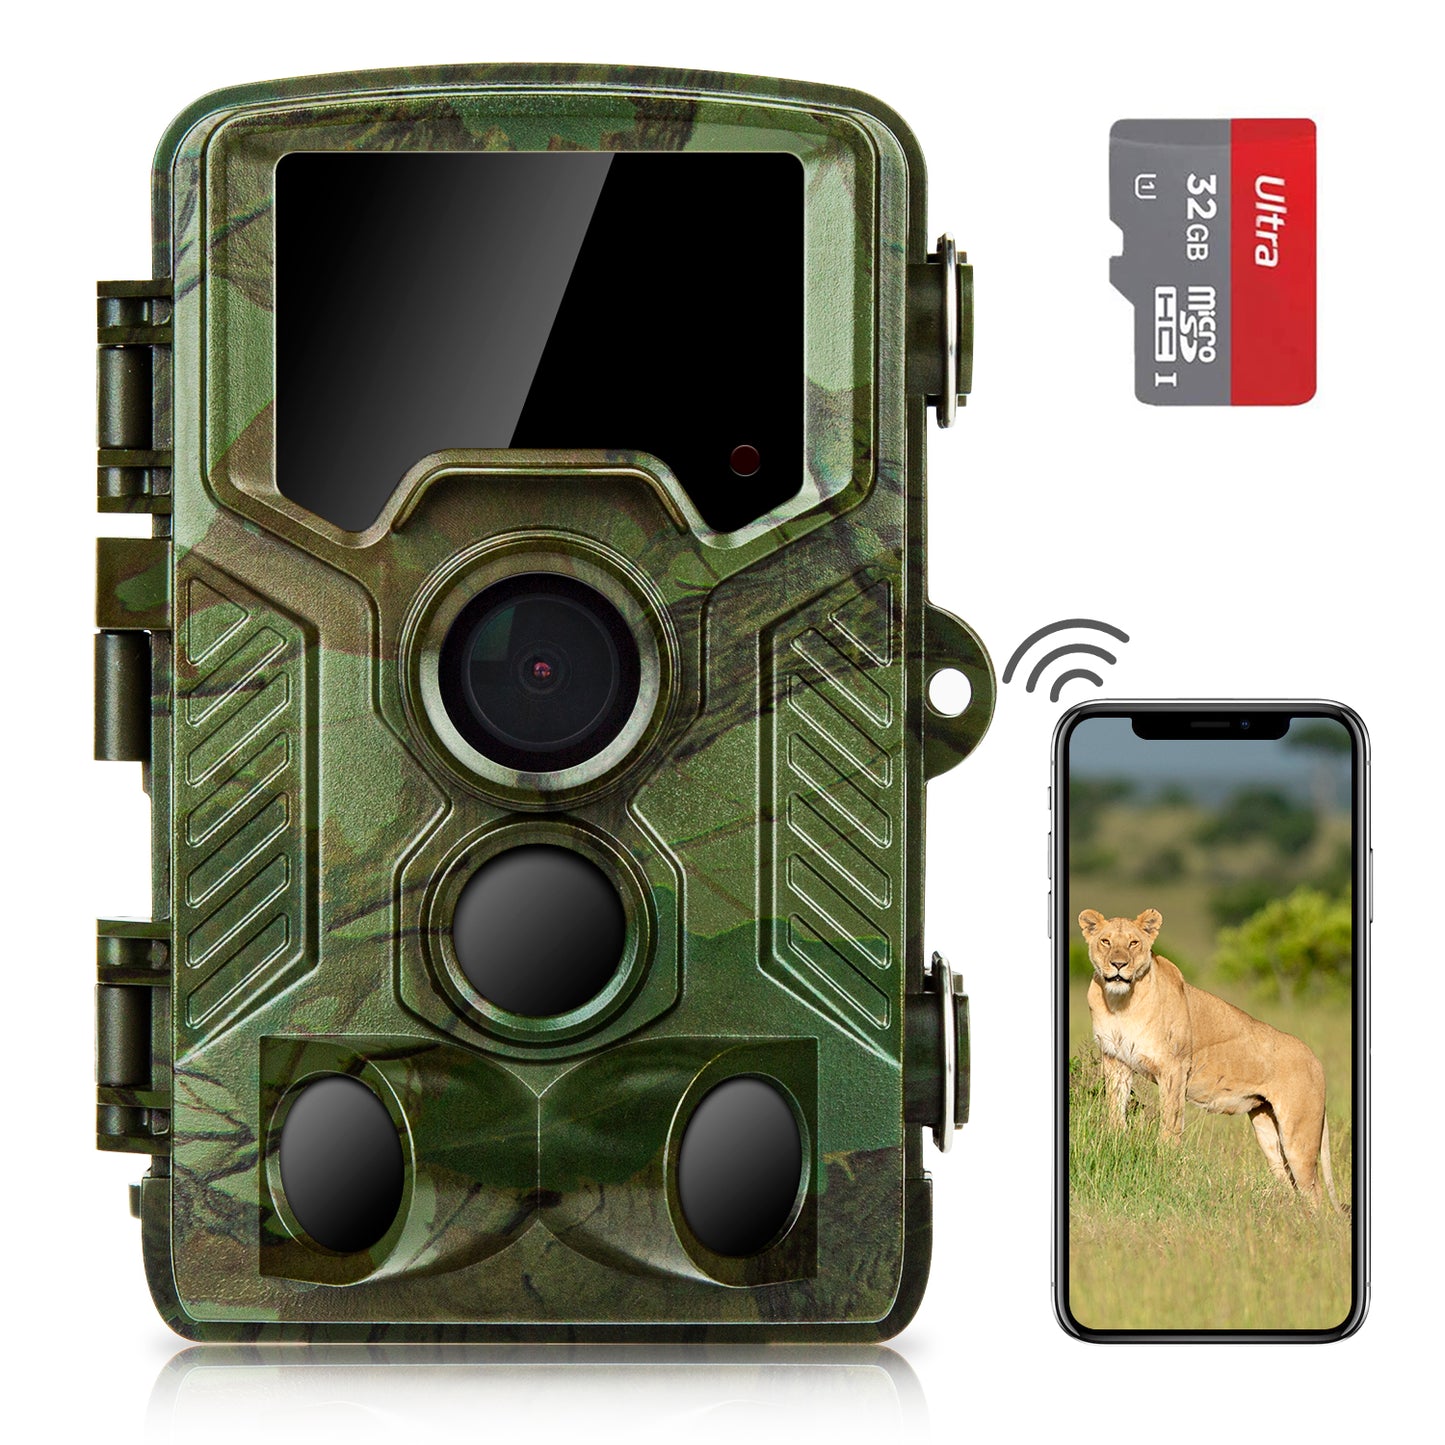 COOLIFE H881 WiFi Bluetooth Wildkamera 4K 32 MP Abzugentfernung Bis 25 m Wildkamera mit Bewegungsmelder Nachtsicht 49pcs 850nm IR LEDs Jagdkamera mit 32GB Speicherkarte